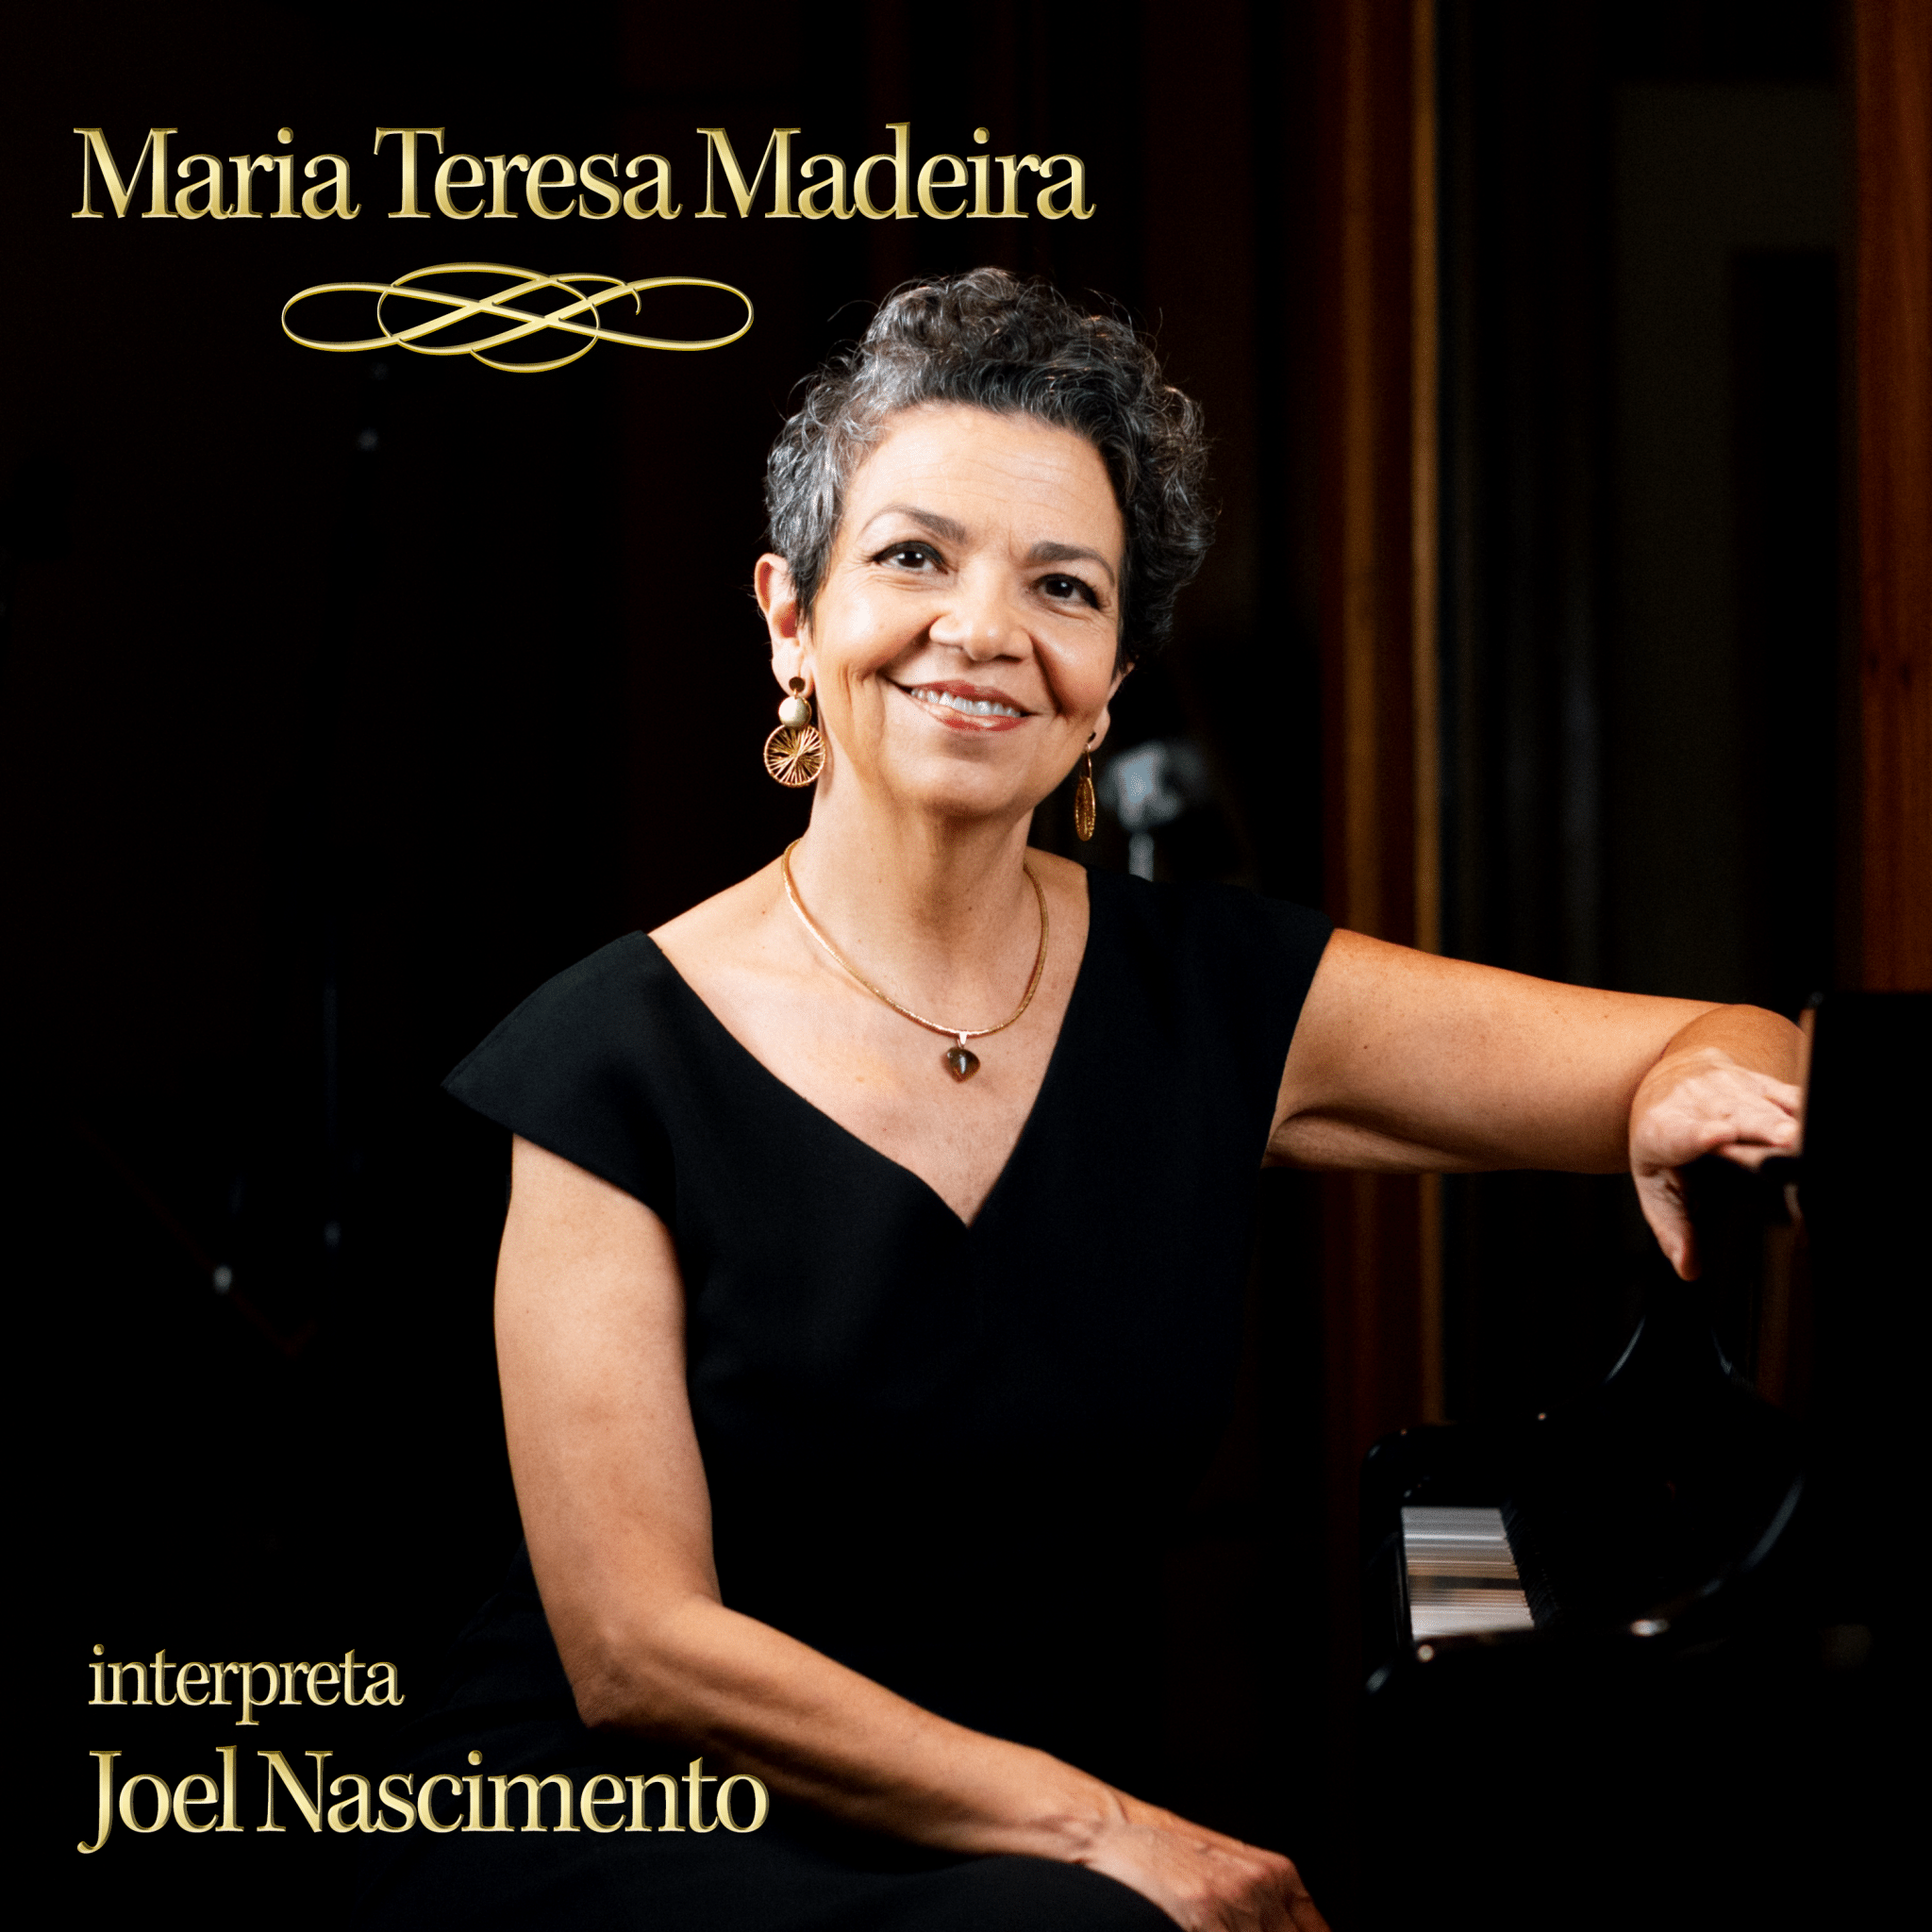 revistaprosaversoearte.com - Álbum 'Maria Teresa Madeira interpreta Joel Nascimento'